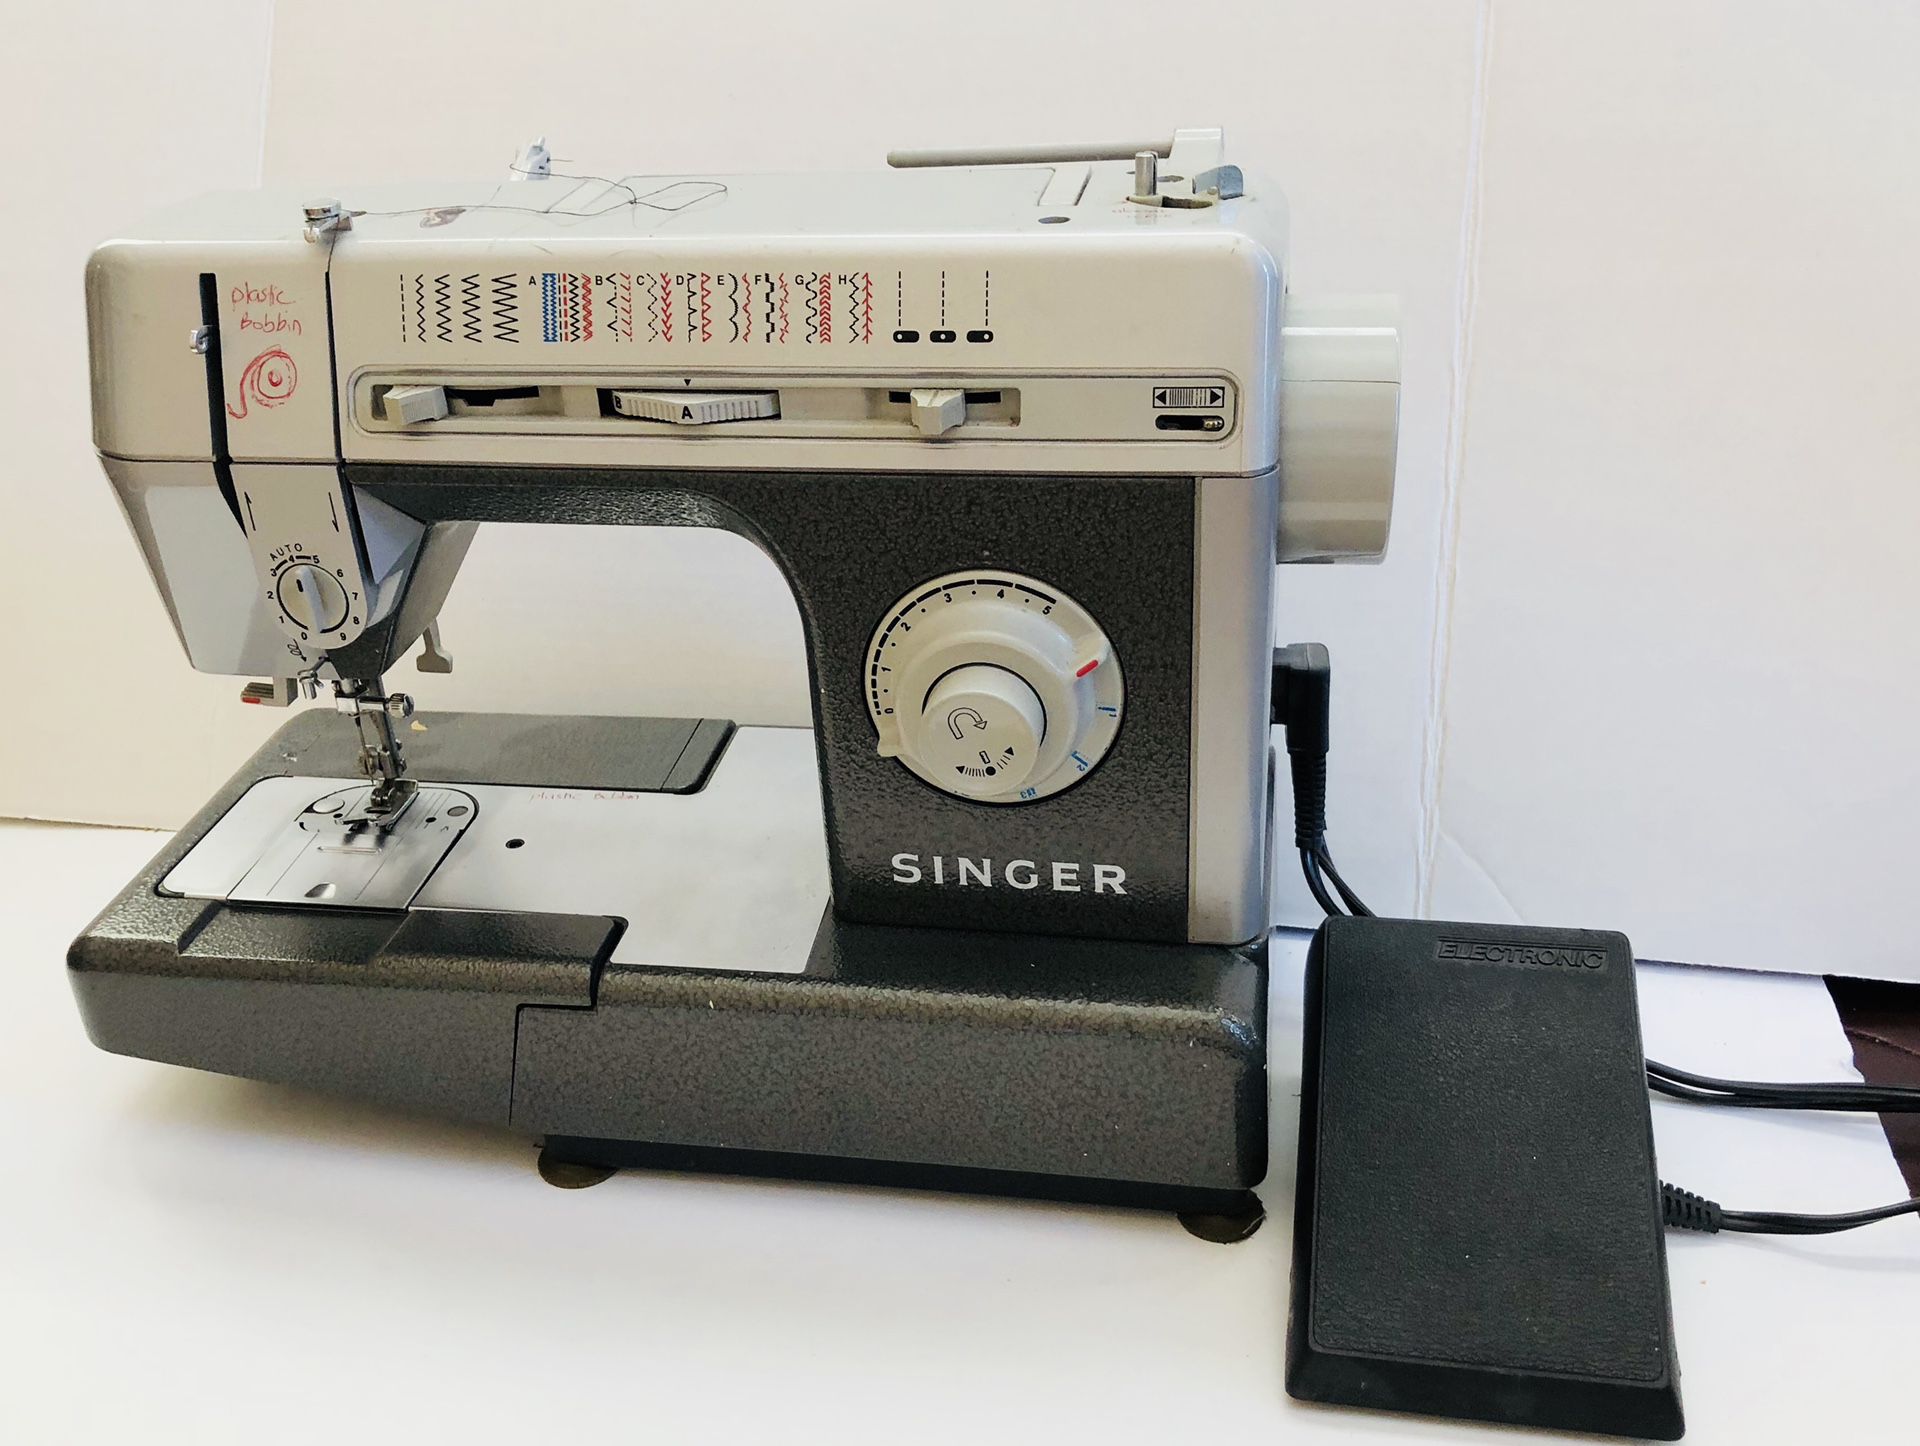 Singer sewing machine CG -590 C